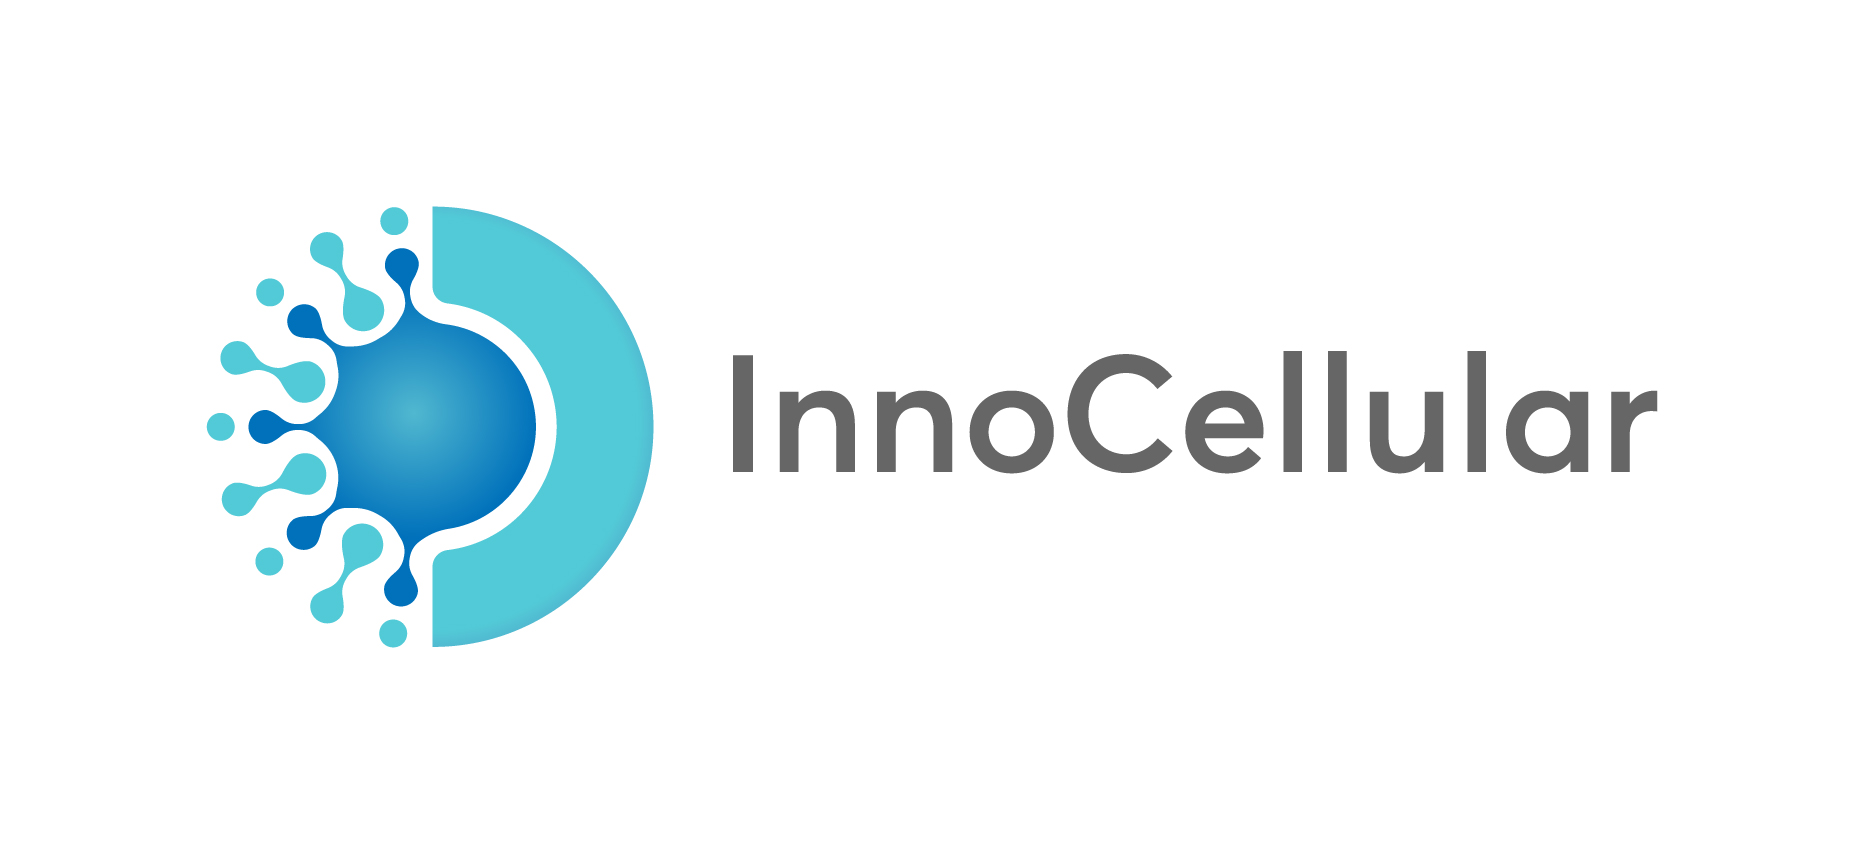 Overview of InnoCellular - InnoCellular